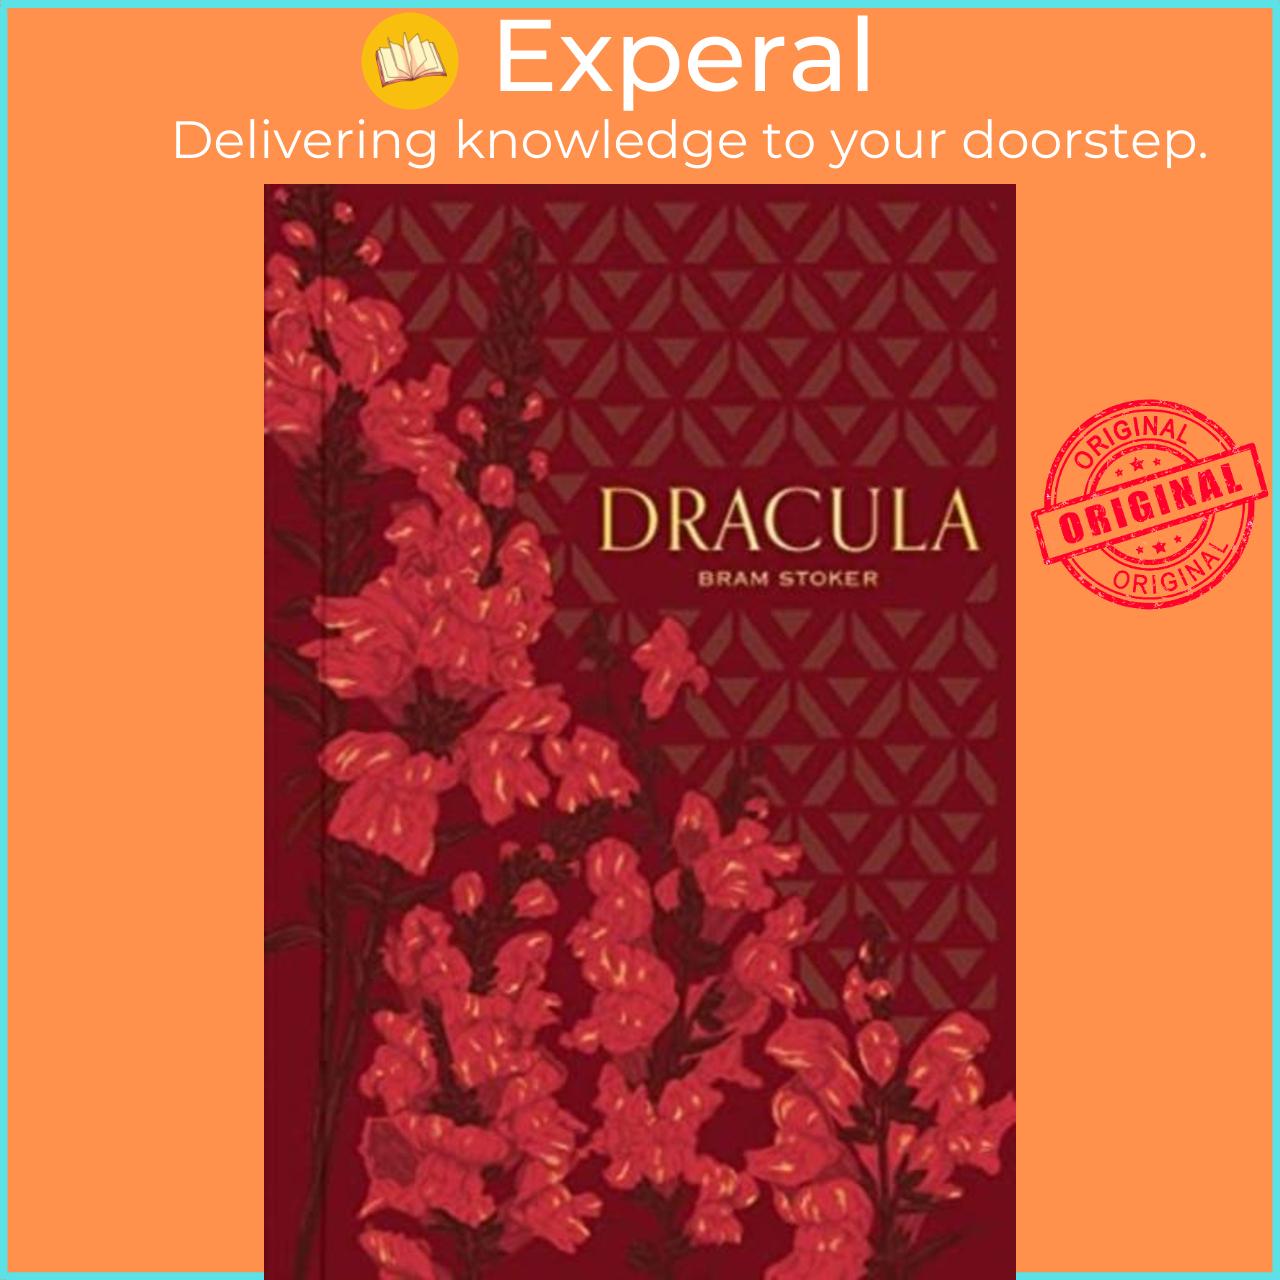 Sách - Dracula by Bram Stoker (UK edition, paperback)